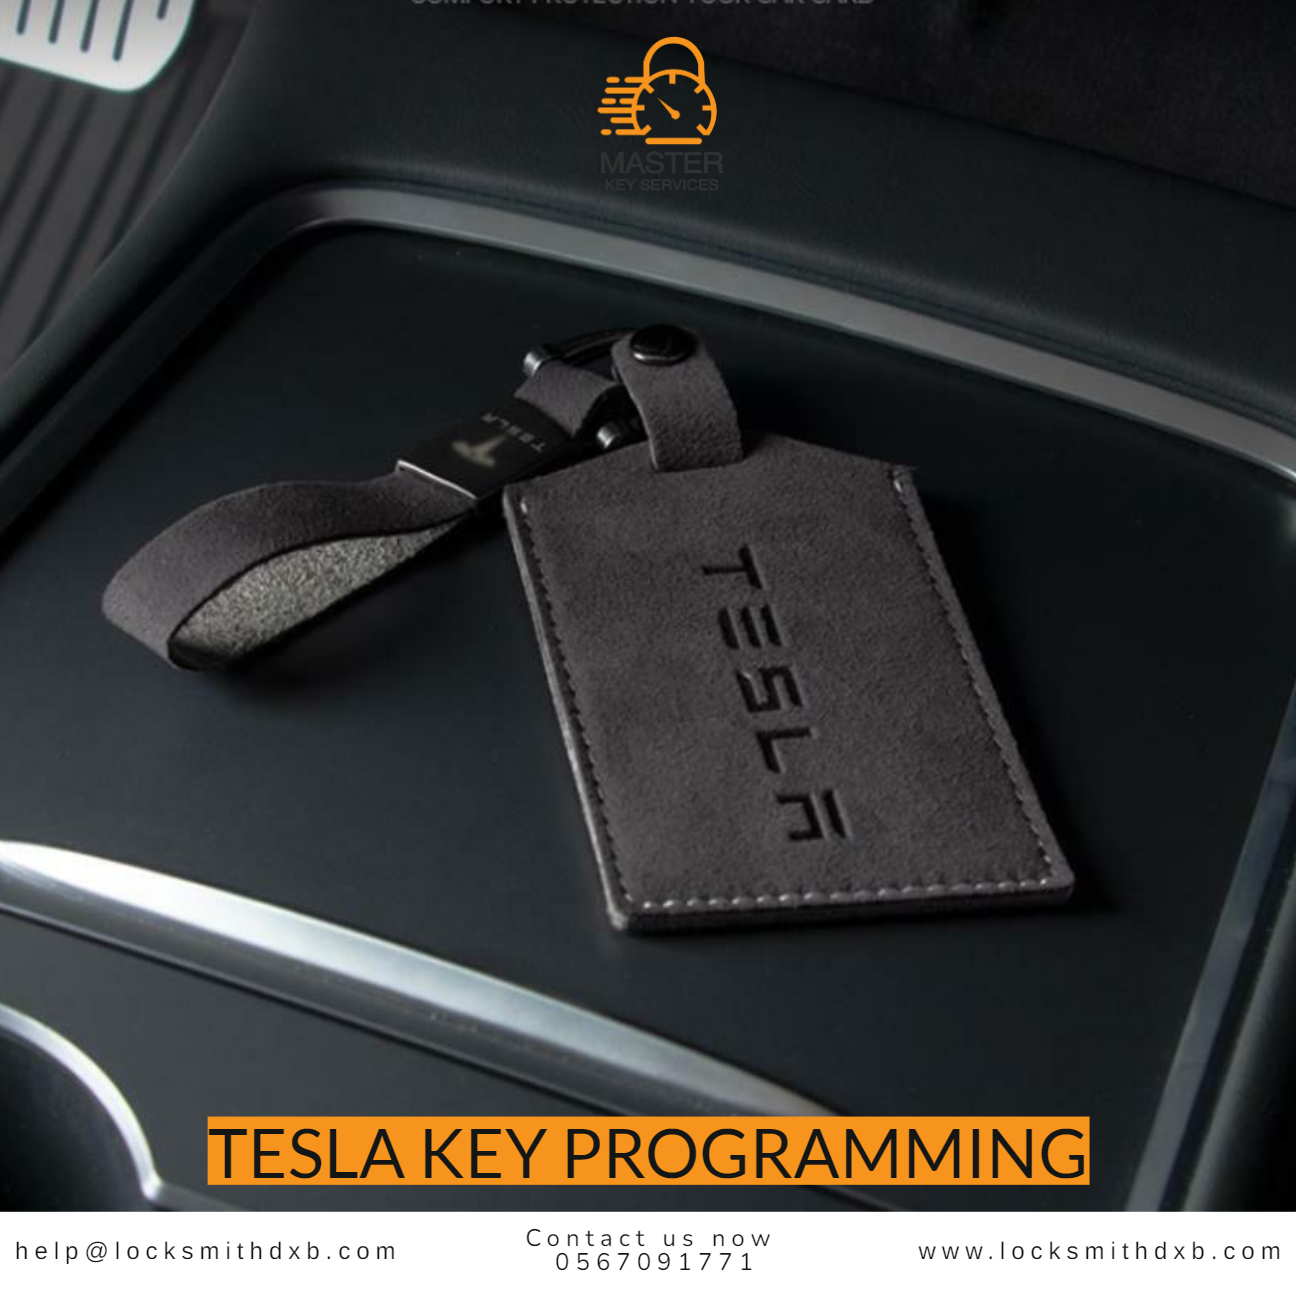 Tesla key programming